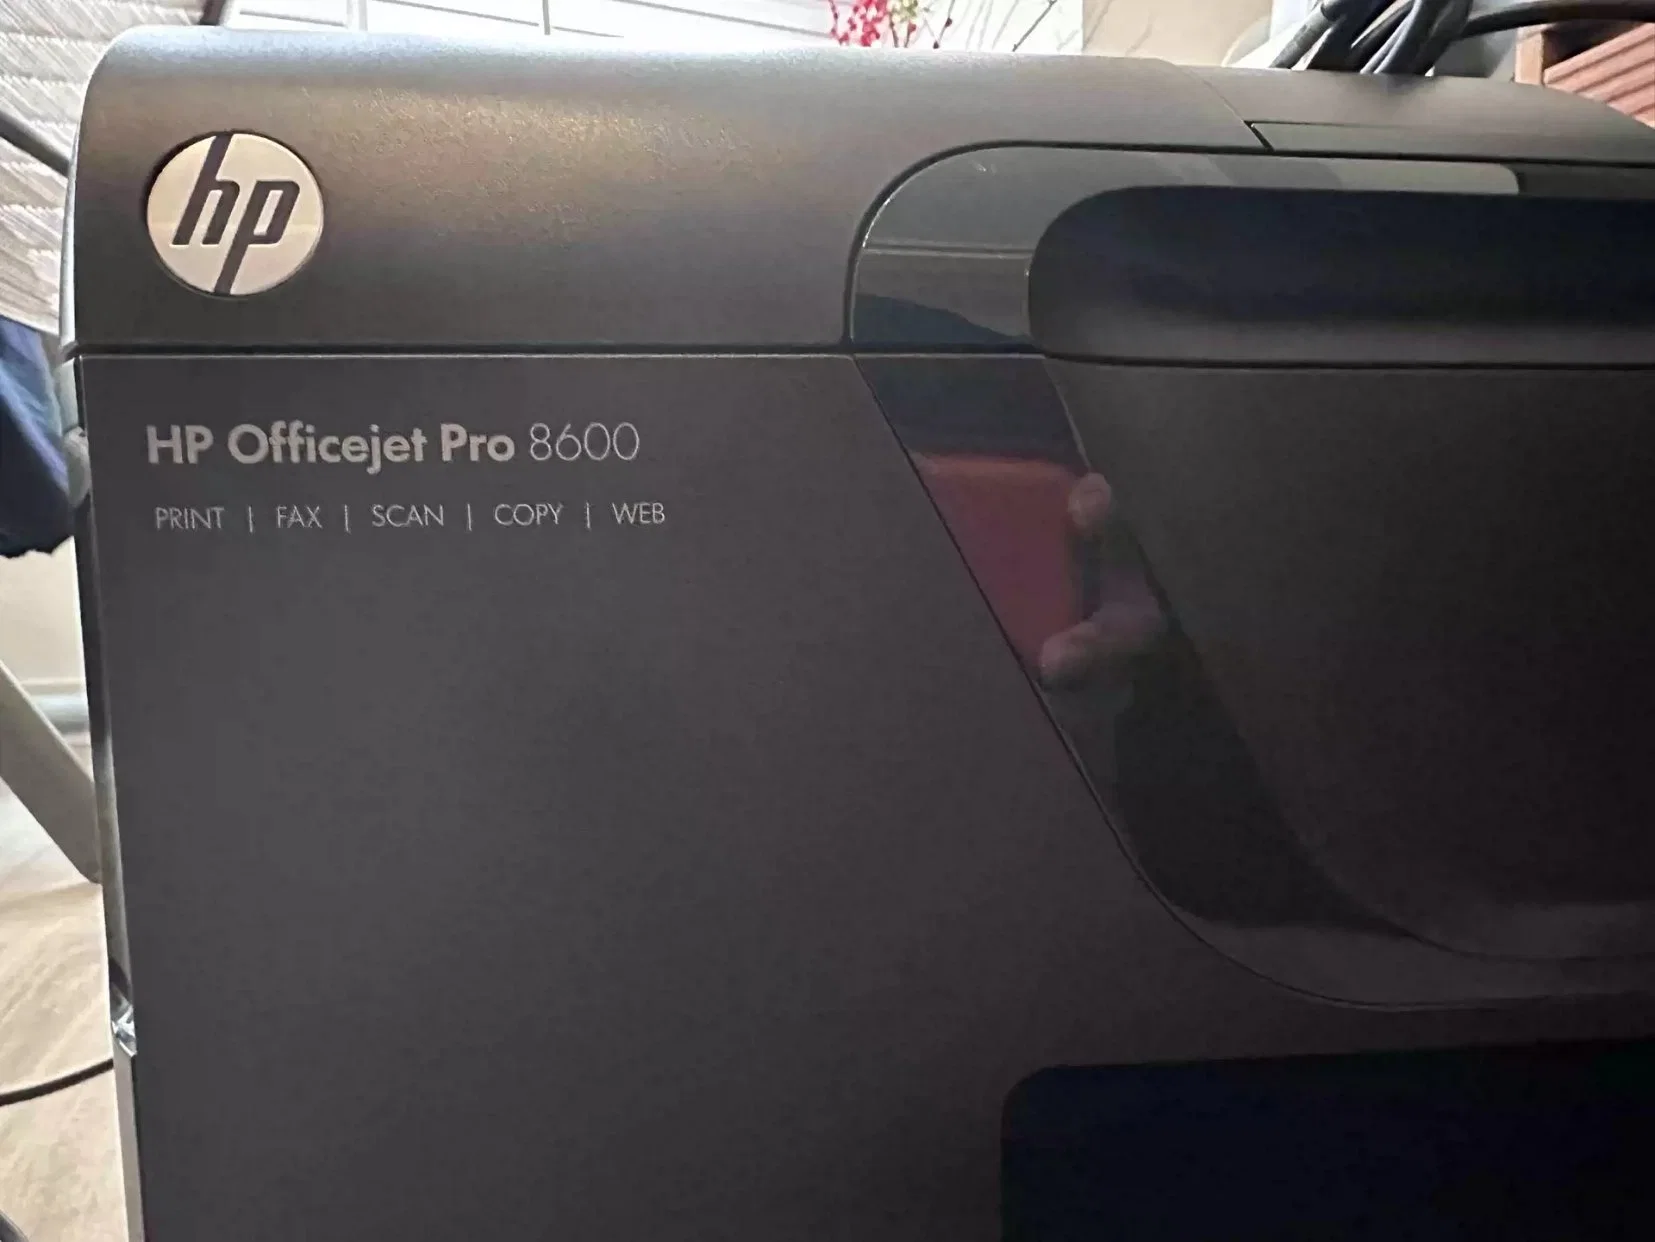 Pozo de prueba usado HP Officejet PRO 8600 8610 8620 8600plus impresora impresora escáner de inyección de tinta todo en uno Copiadora 9157 Segunda mano 90% Nueva impresora HP N911A